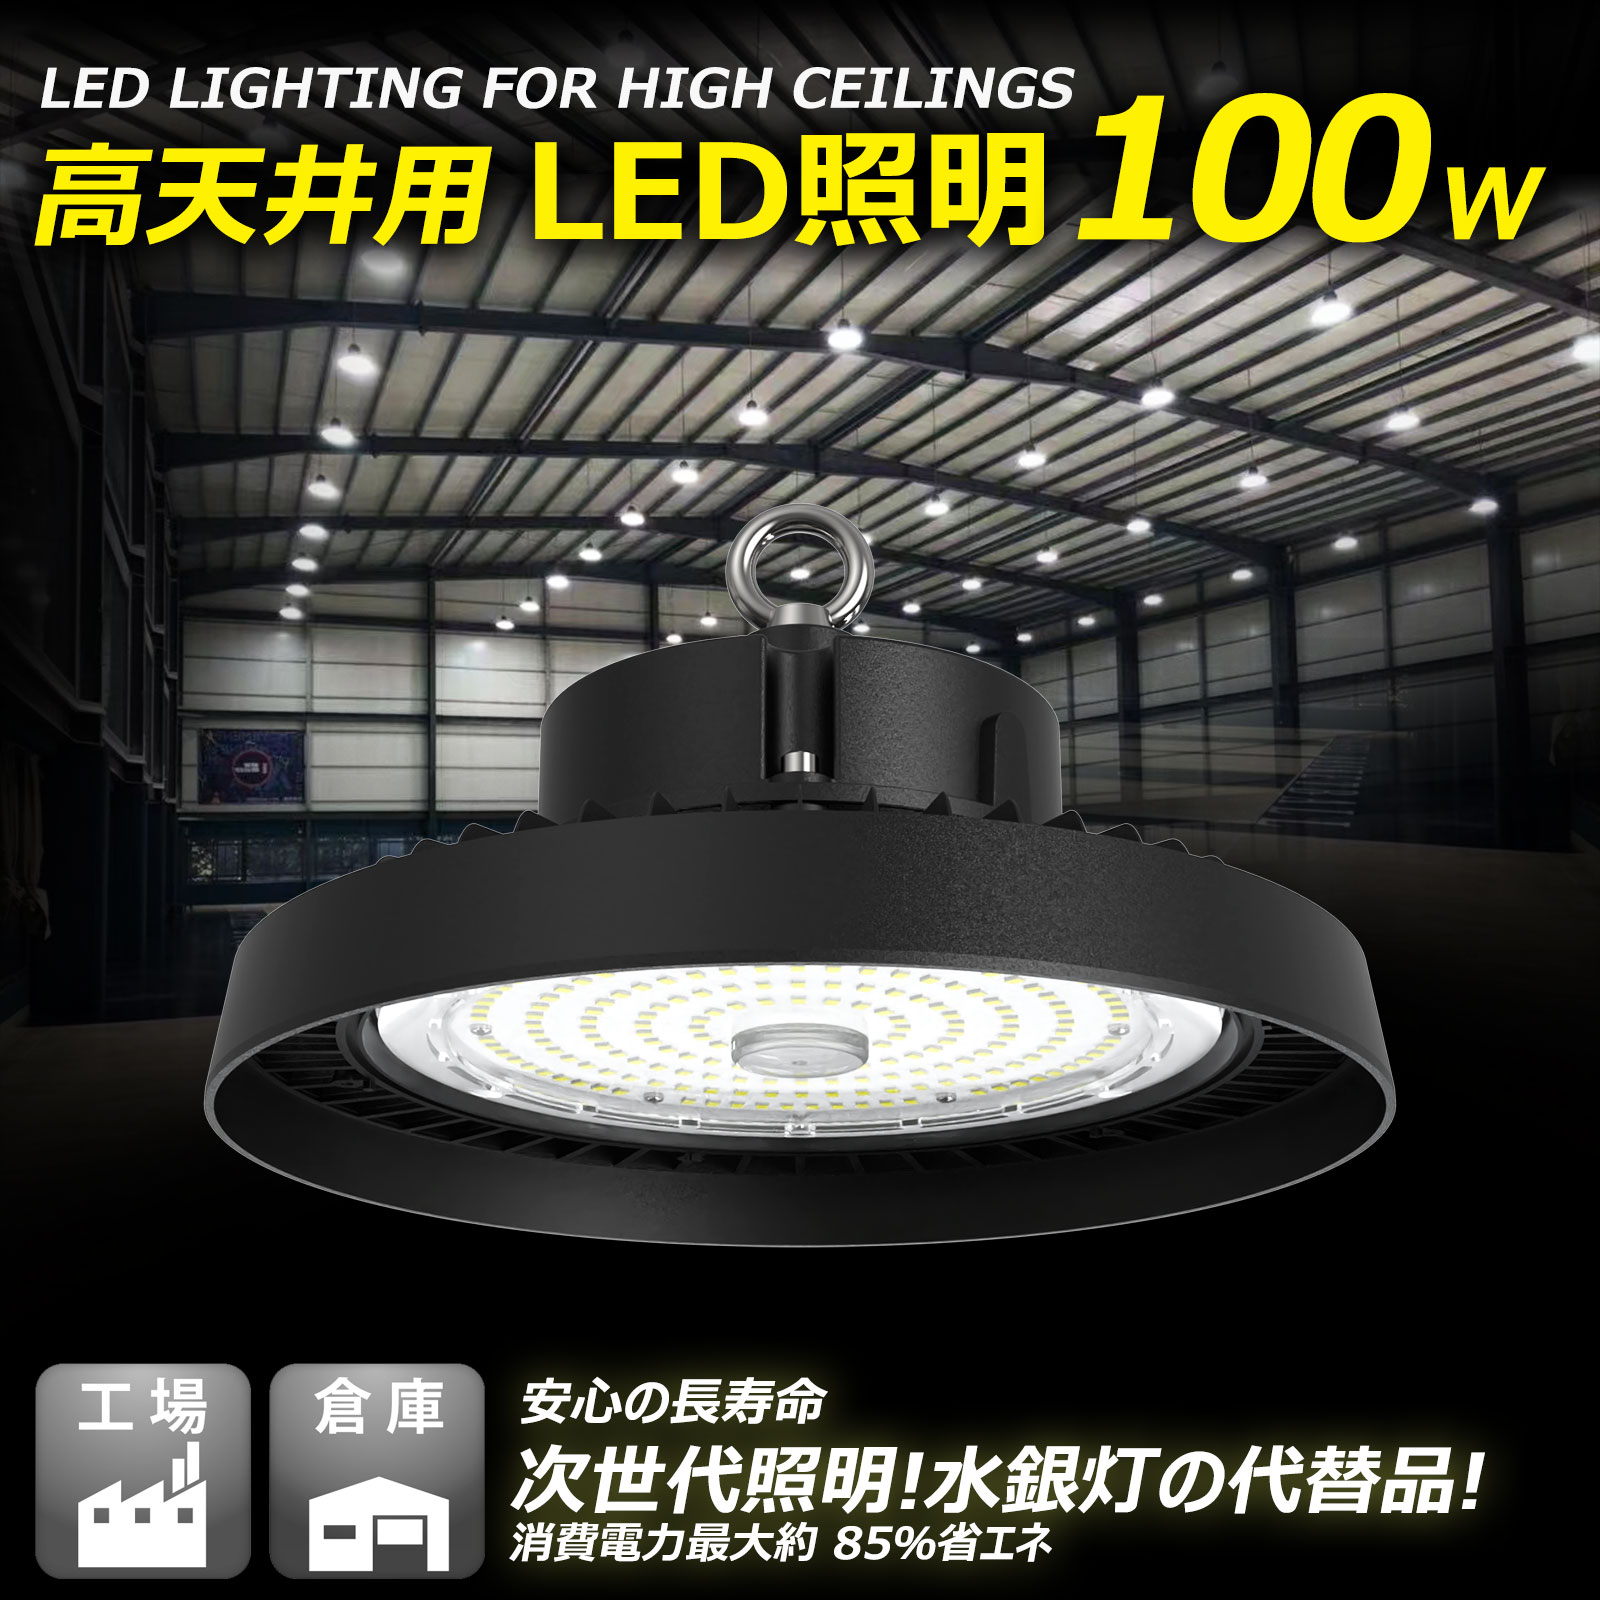 セール 100W LED高天井灯 32000lm 超高輝度 ペンダントライト ワークライト 投光器 落下防止ワイヤー 昼白色 アース線付 軽量 屋内  省エネ 一年保証 LG-100W